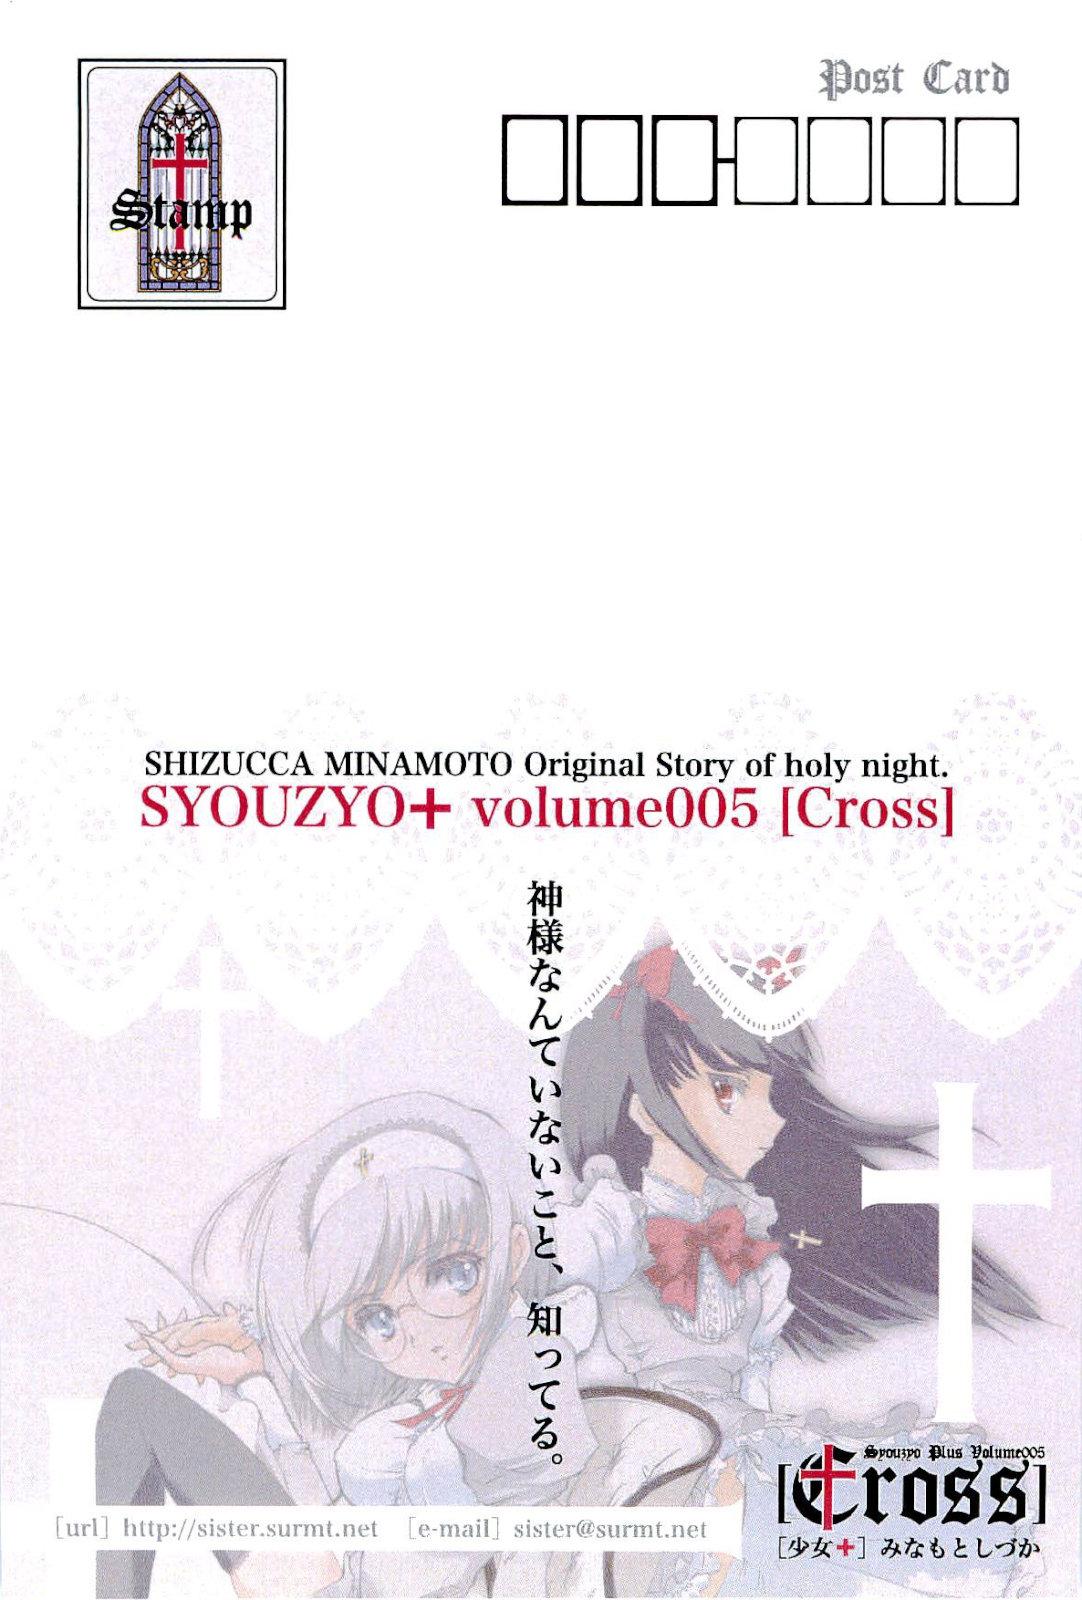 Syouzyo Plus Volume 005 CROSS 10